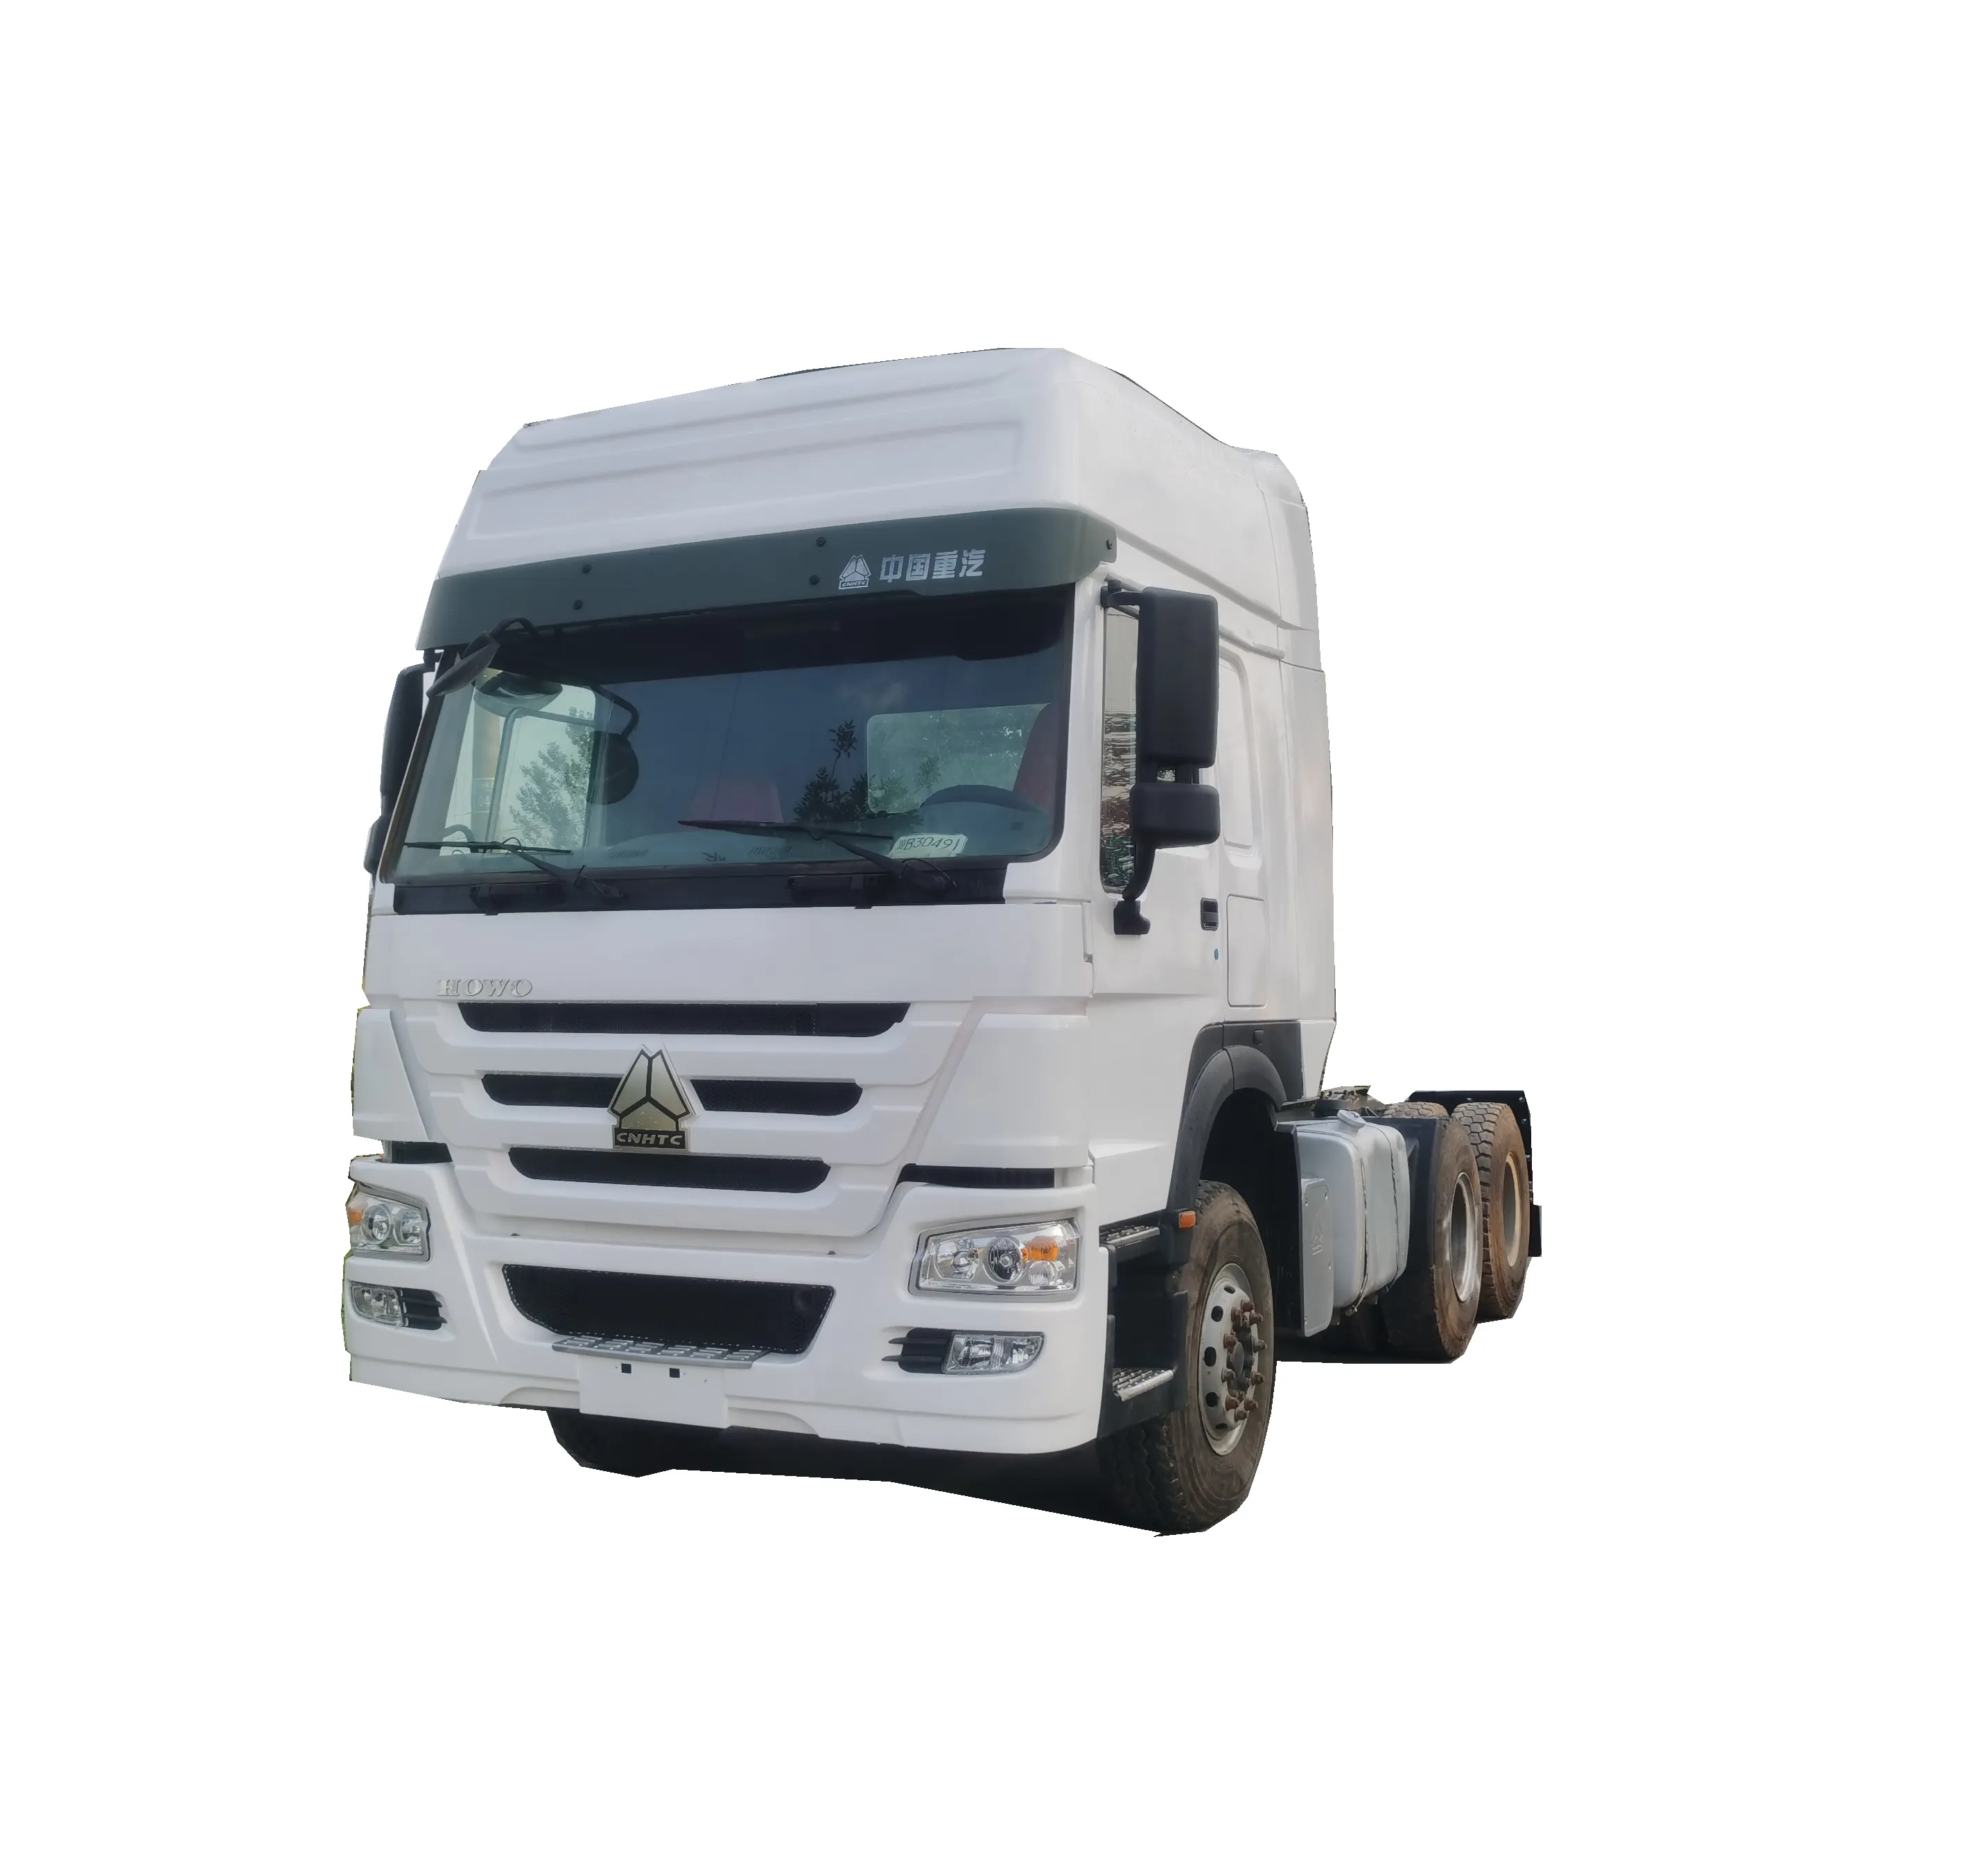 Vendita calda in testa di camion per la vendita di alta qualità a basso prezzo 6x4 Howo 371/375/420 trattore camion